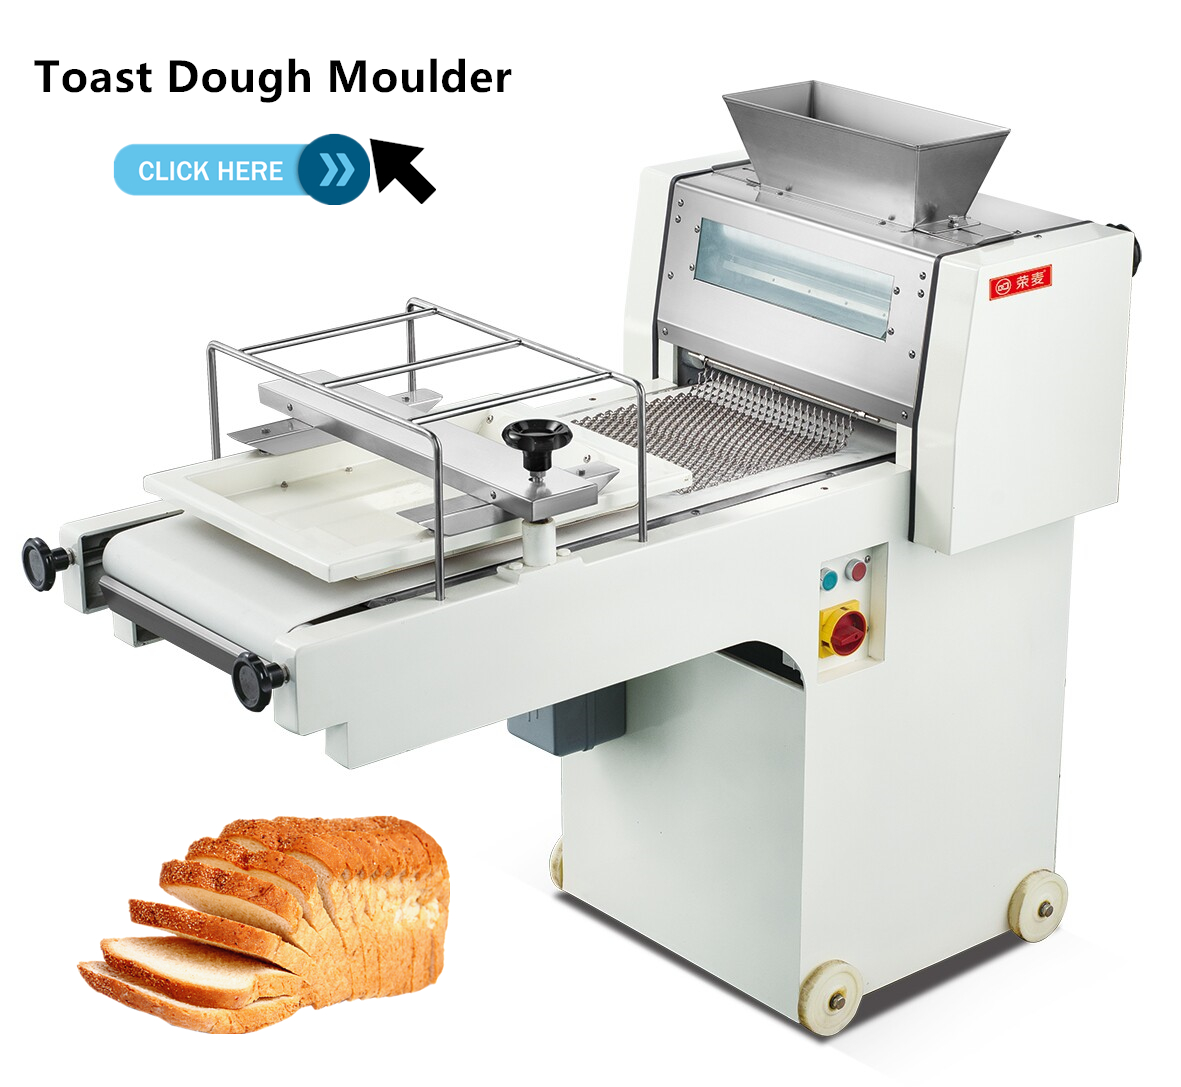 Loaf molder toast bread dough moulder machine for sale price,Bakery Equipment loaf bread molder machine